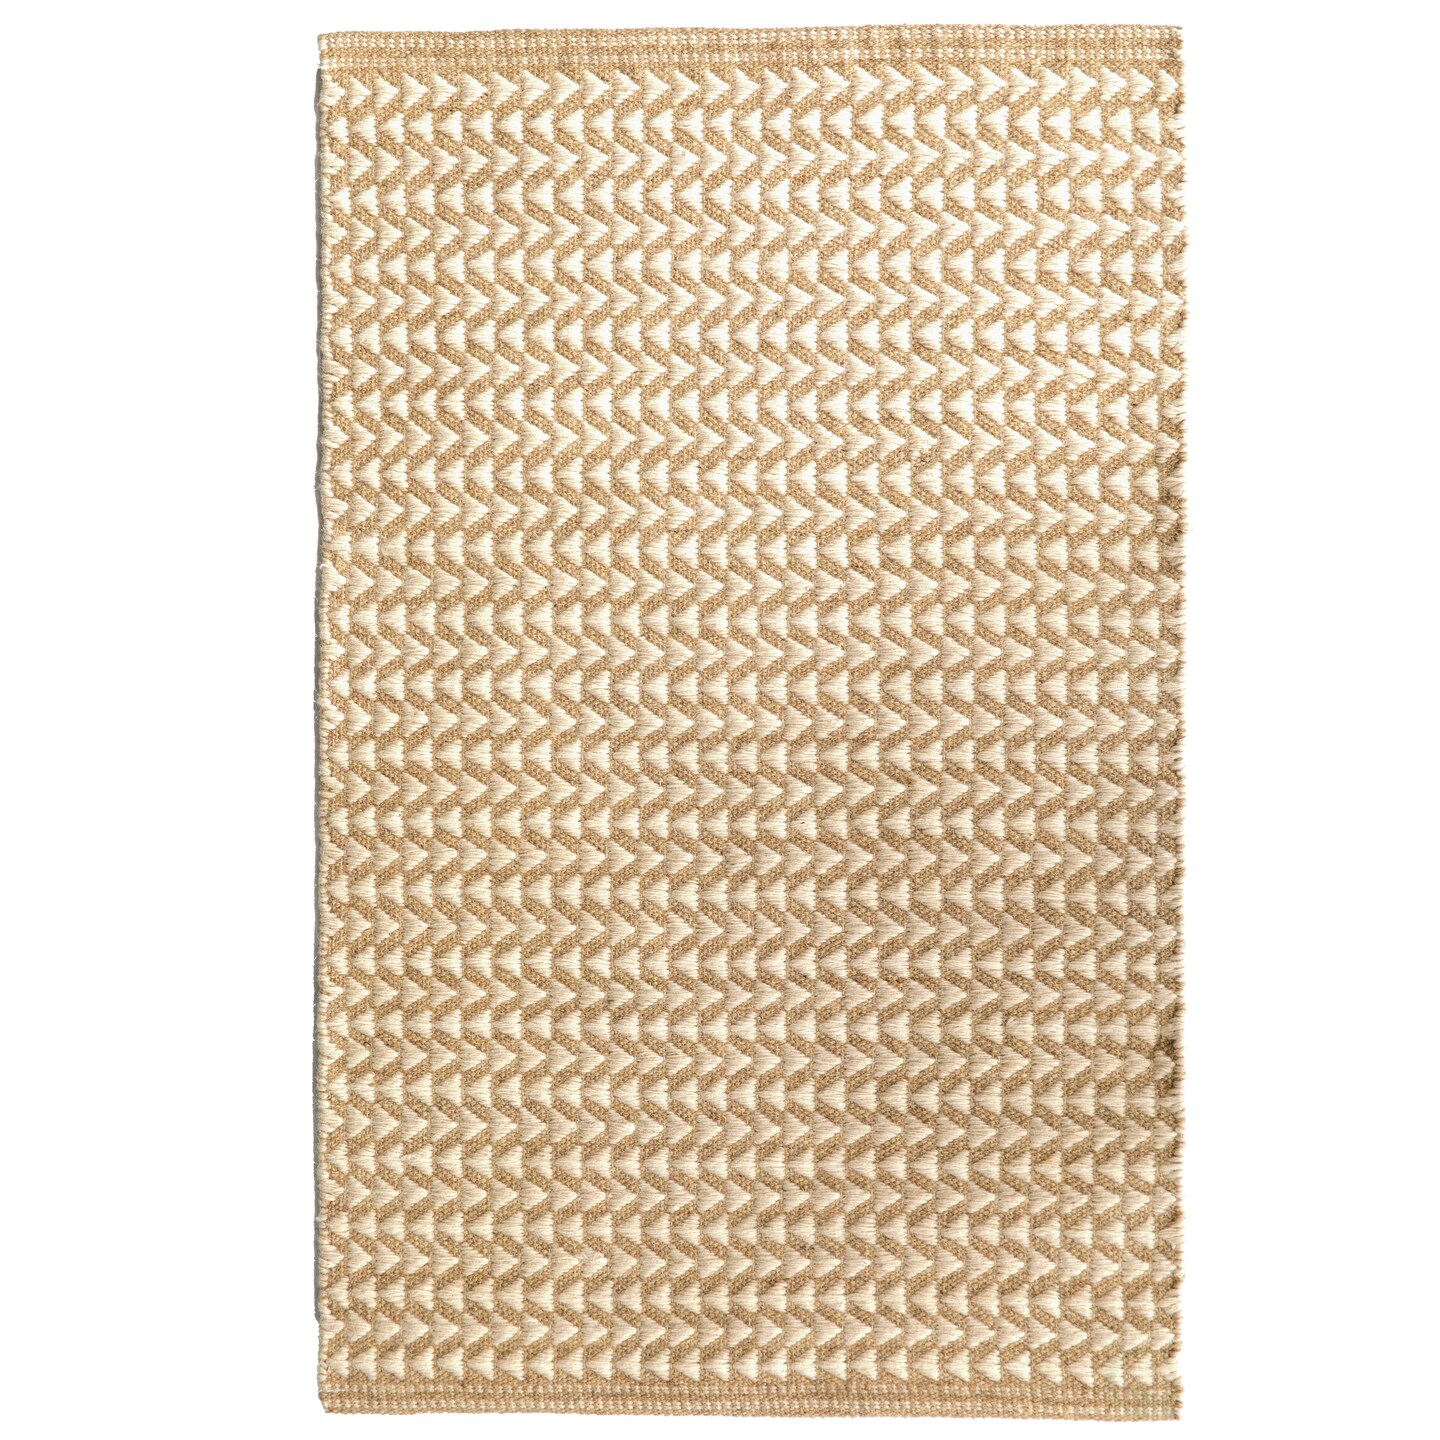 Handwoven Beige and White Geometric Wool Flatweave Kilim Rug, 2&#x27; x 3&#x27;